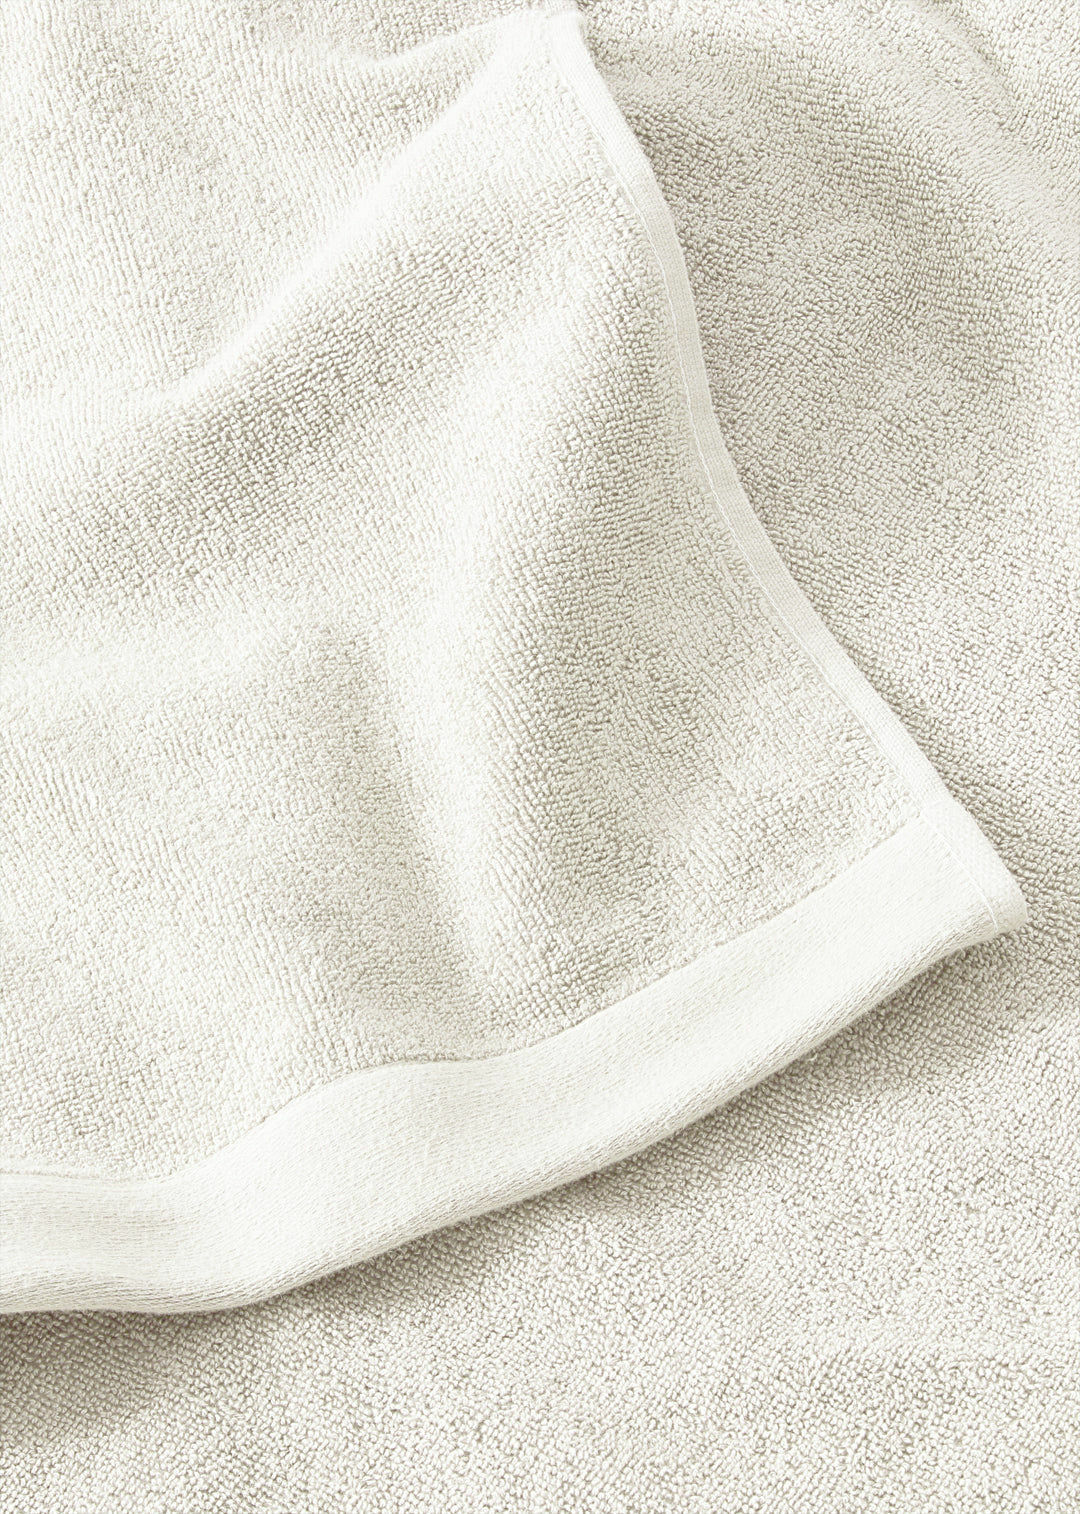 Handtuch Baumwolle Weiß 50 x 70 cm 2